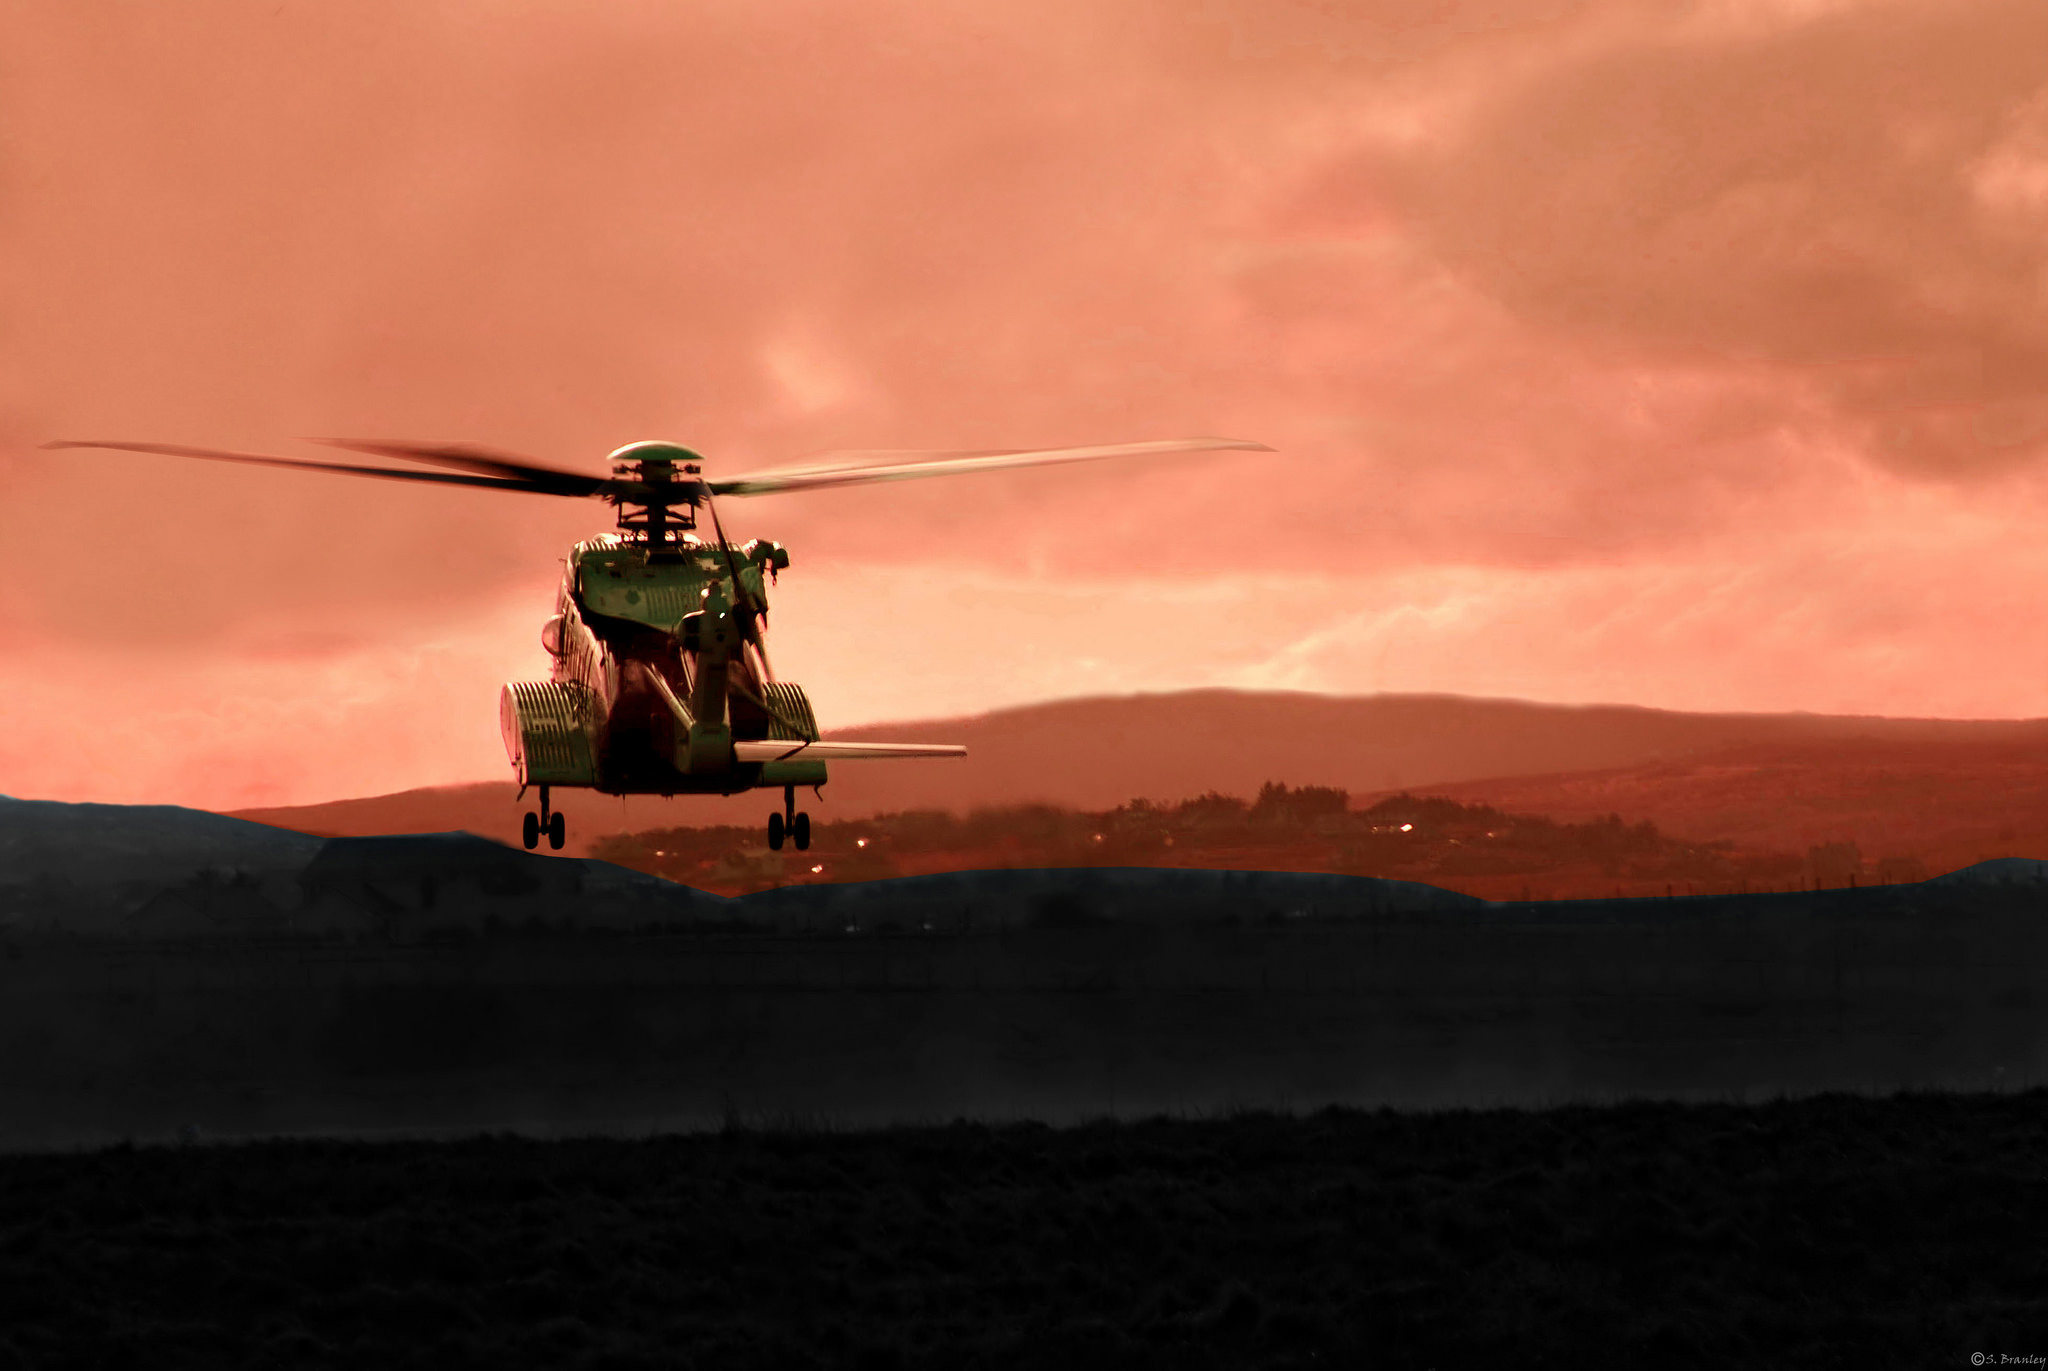 Industri Energi (tidligere Nopef) har jobbet målrettet for å bedre helikoptersikkerheten siden midten av 1990-tallet.